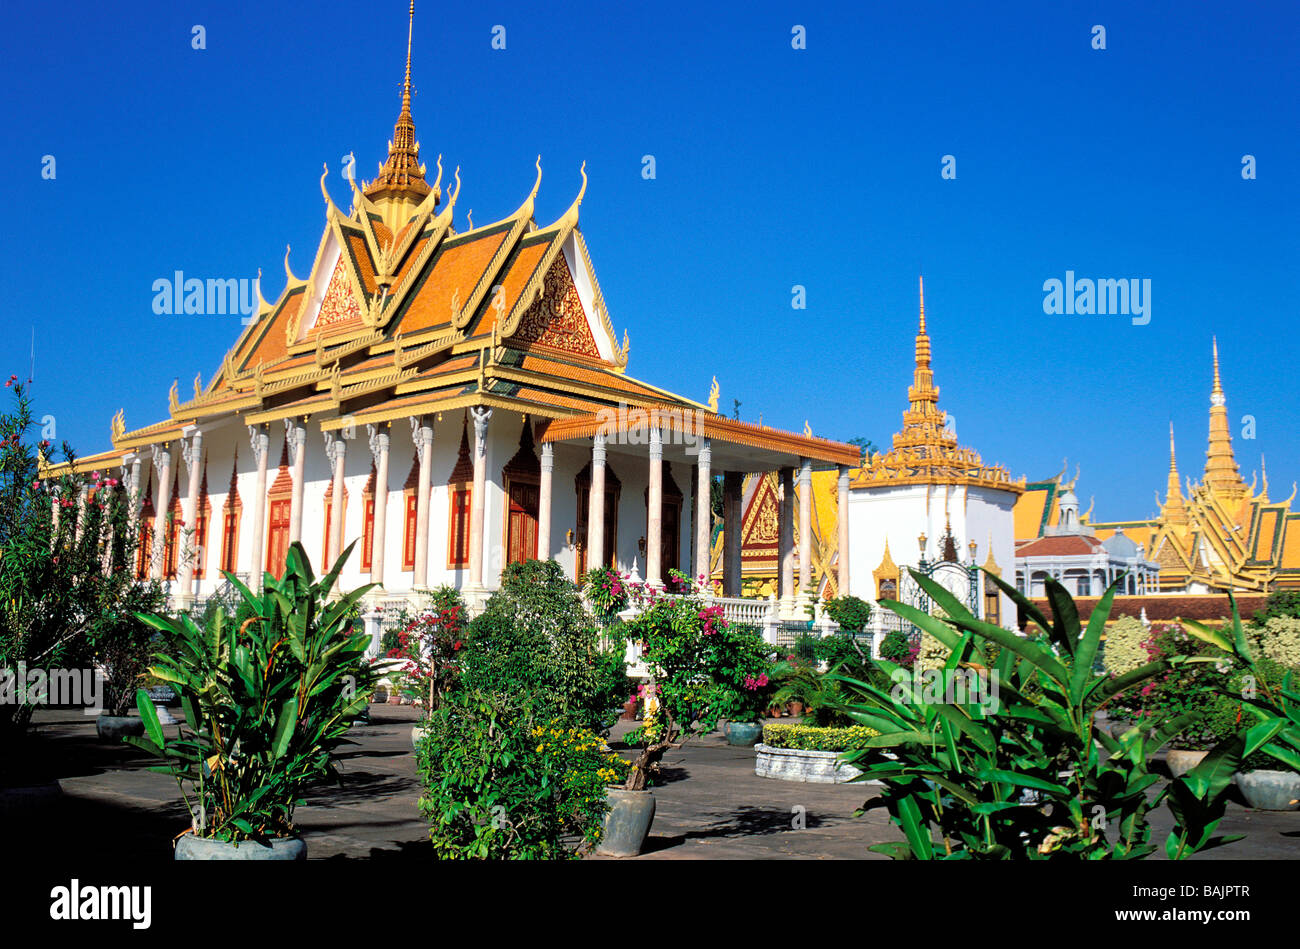 Cambodia, Phnom Penh, Royal Palace Stock Photo